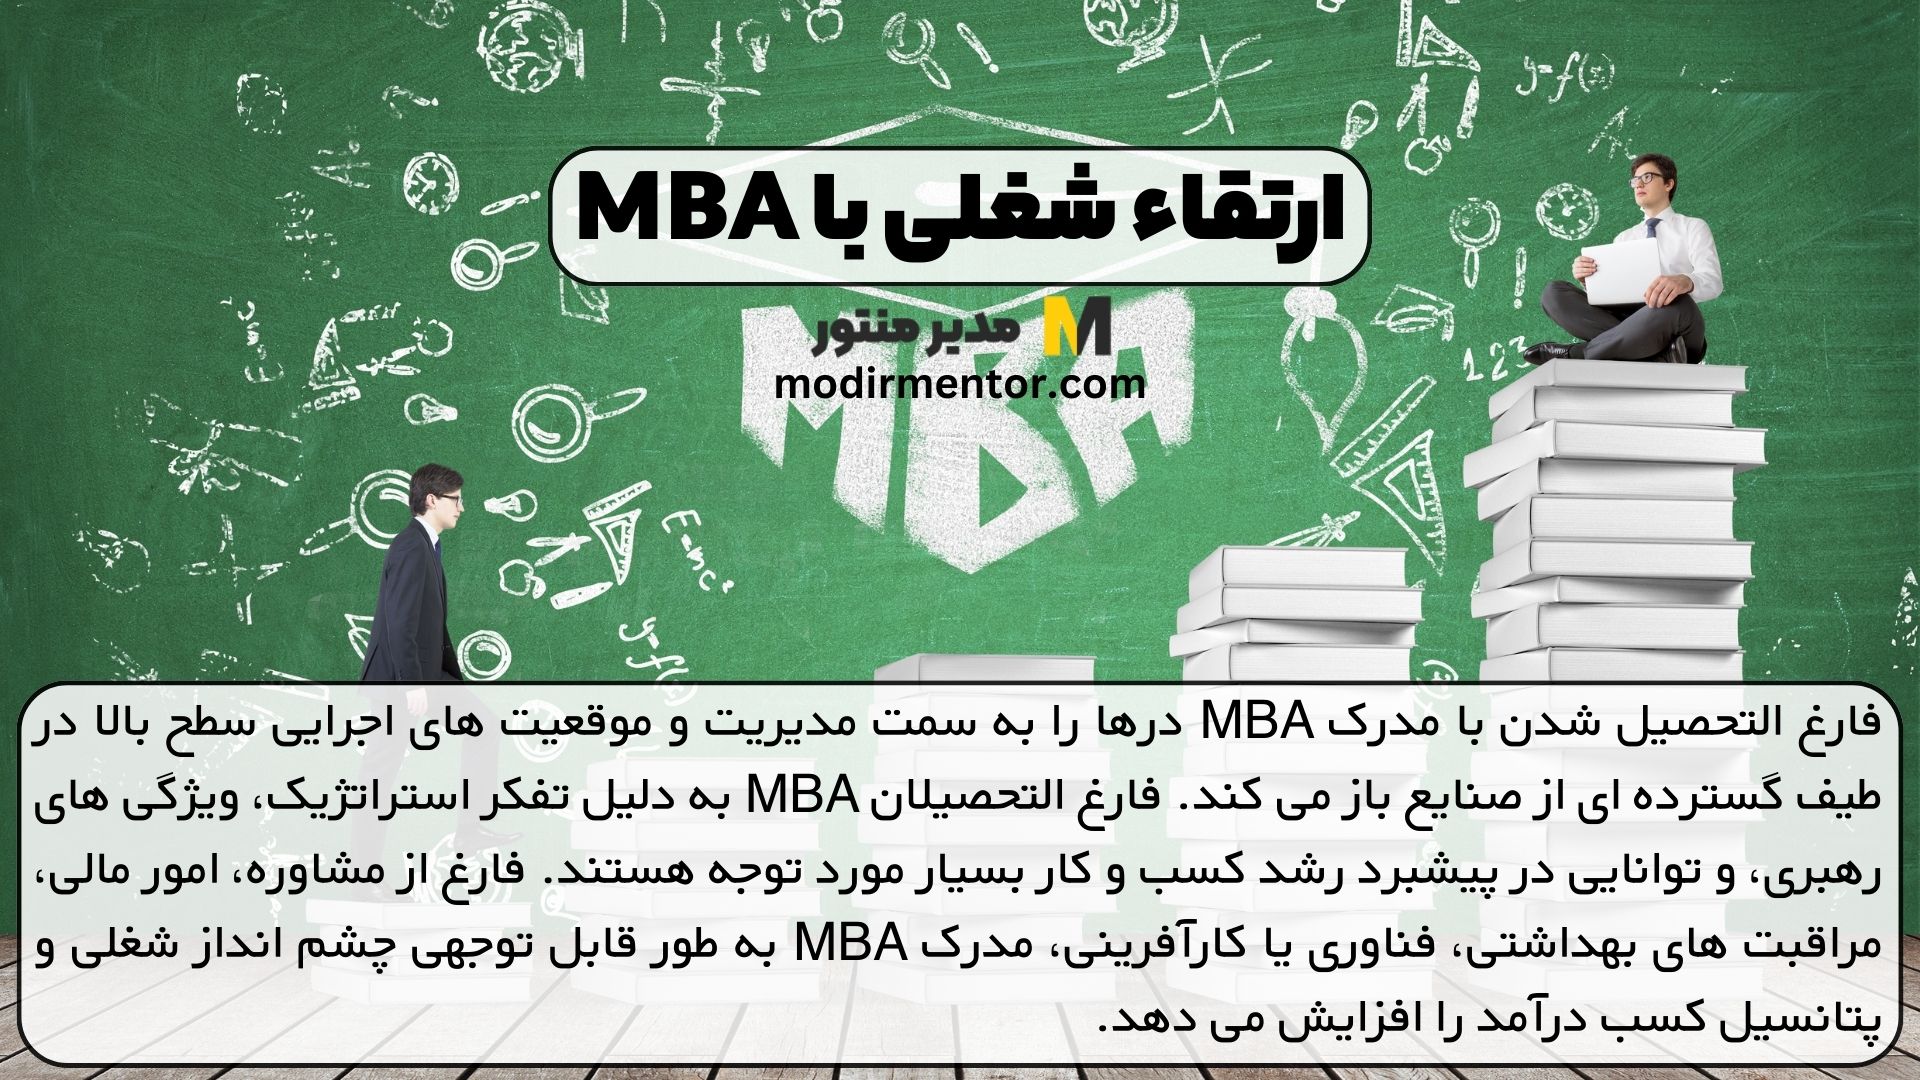 ارتقاء شغلی با MBA